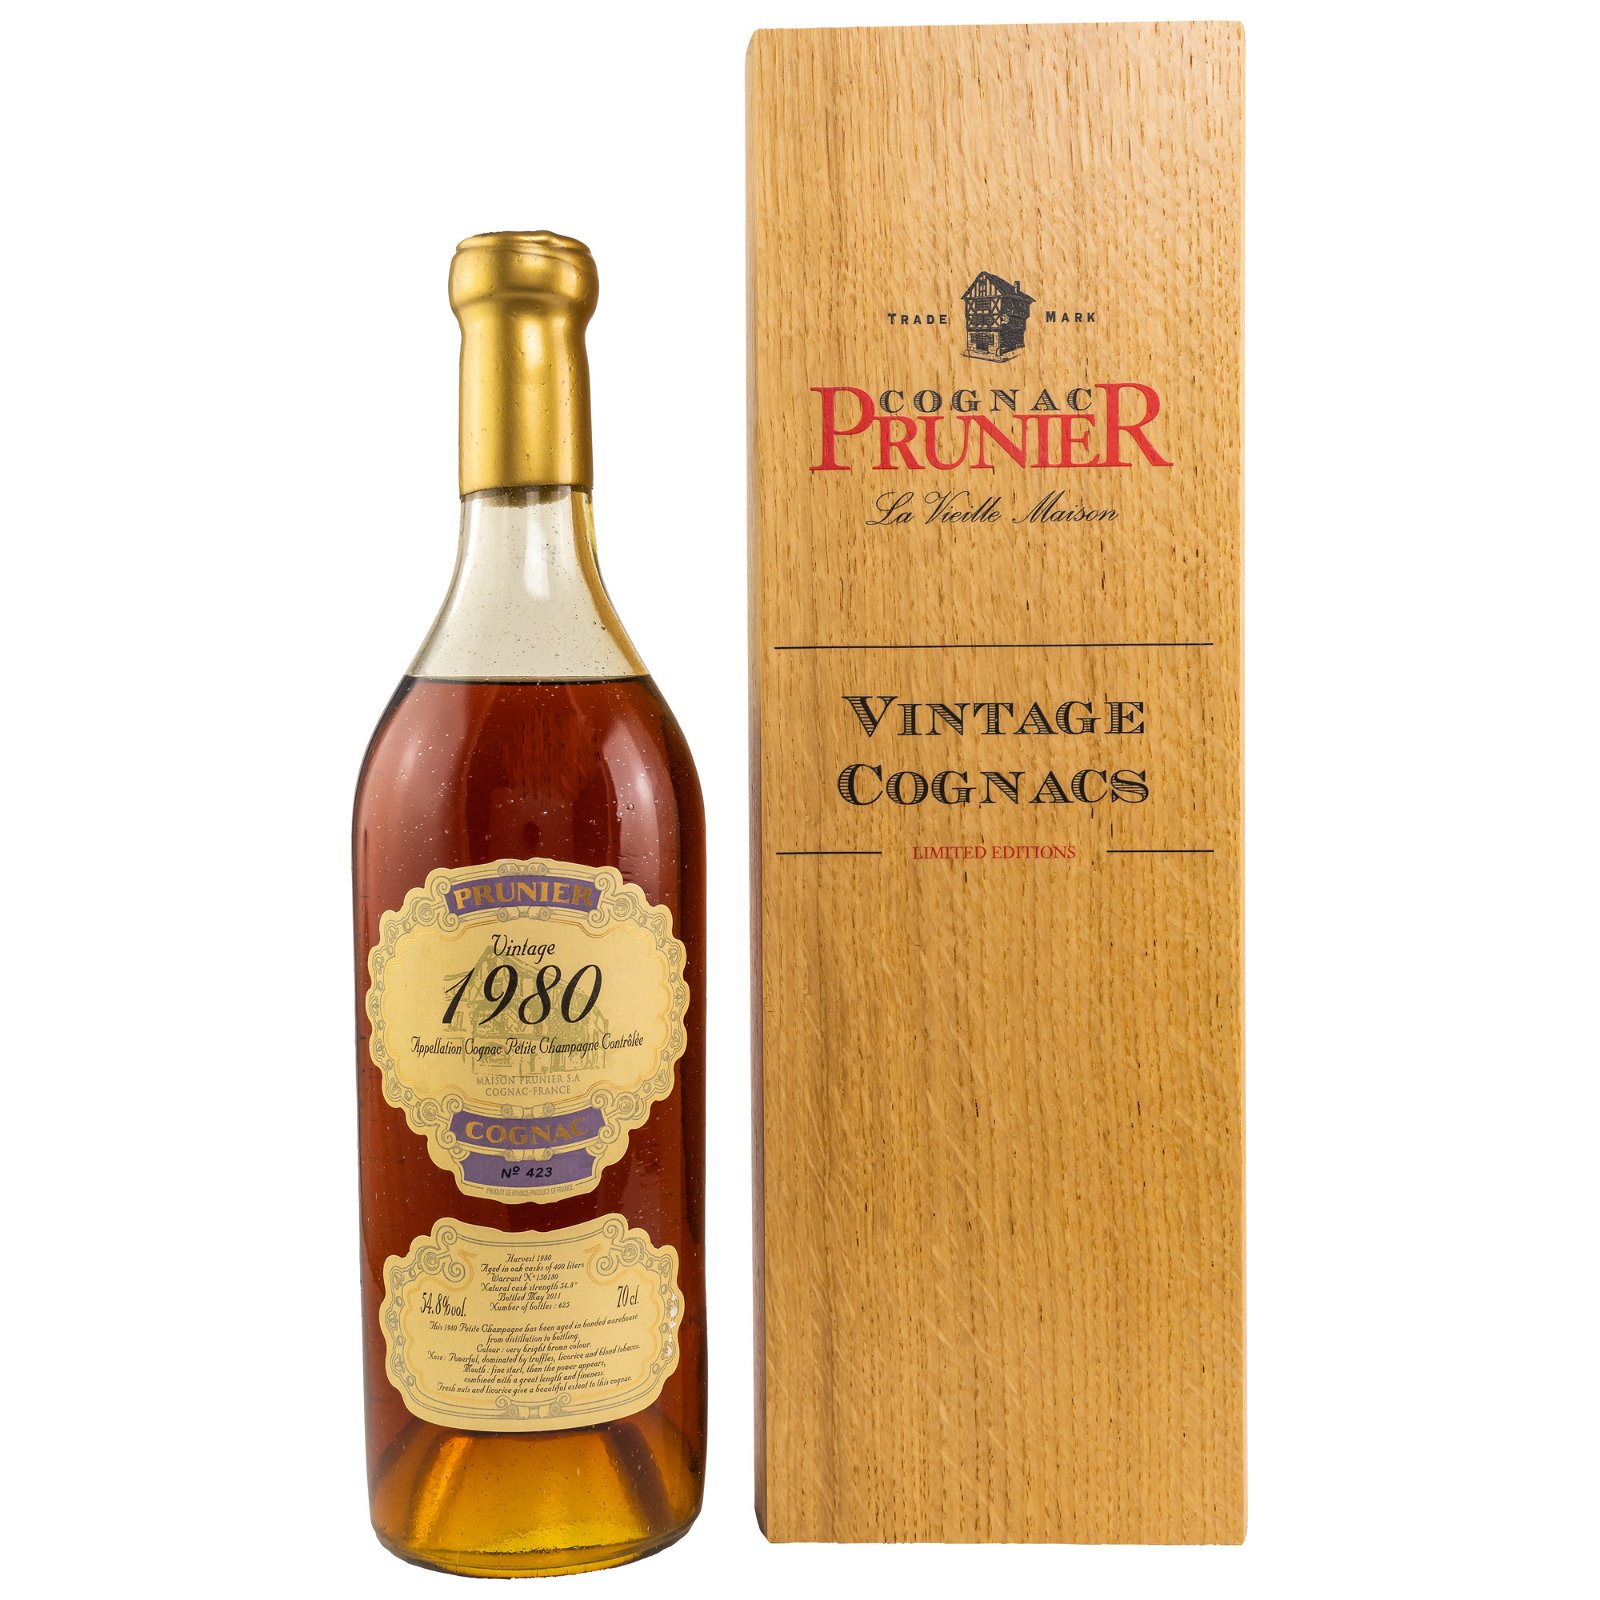 Prunier 1980/2011 Petite Champagne Cognac (Vintage Cognacs)